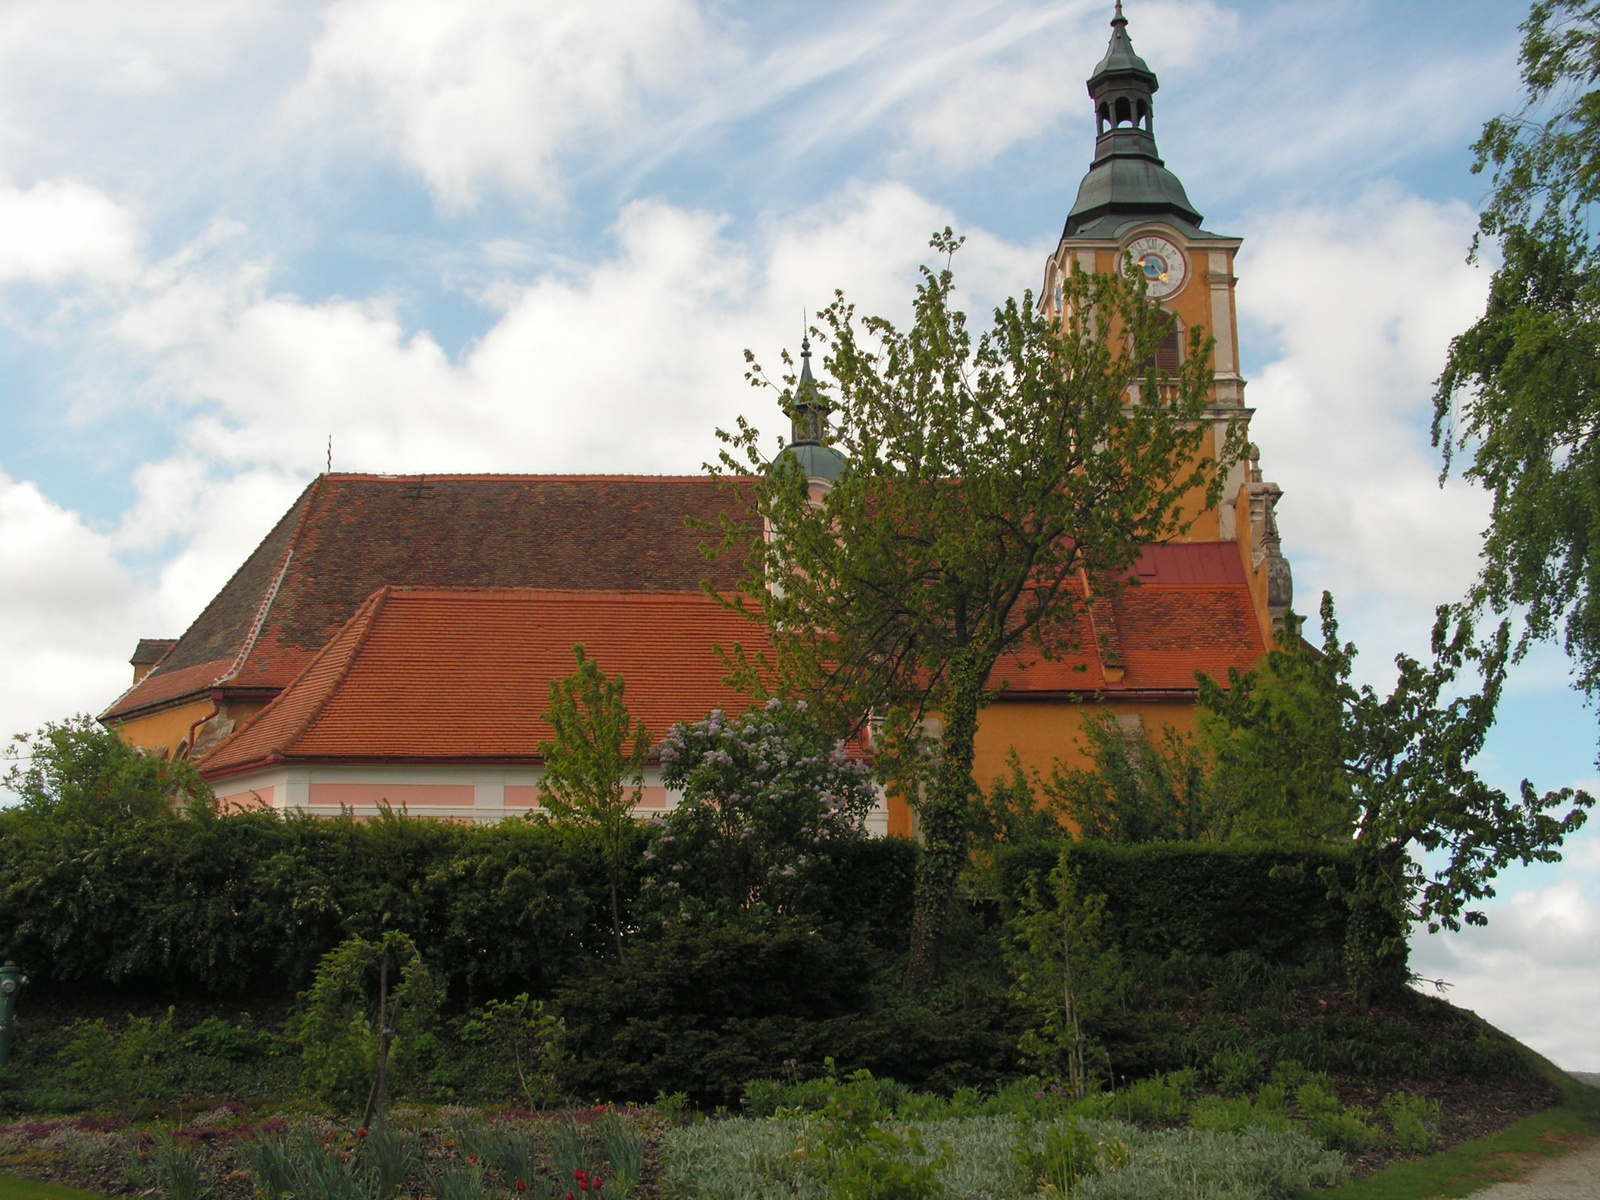 Pöllauberg, Katholische Kirche Pöllauberg + Annakirche, SzG3